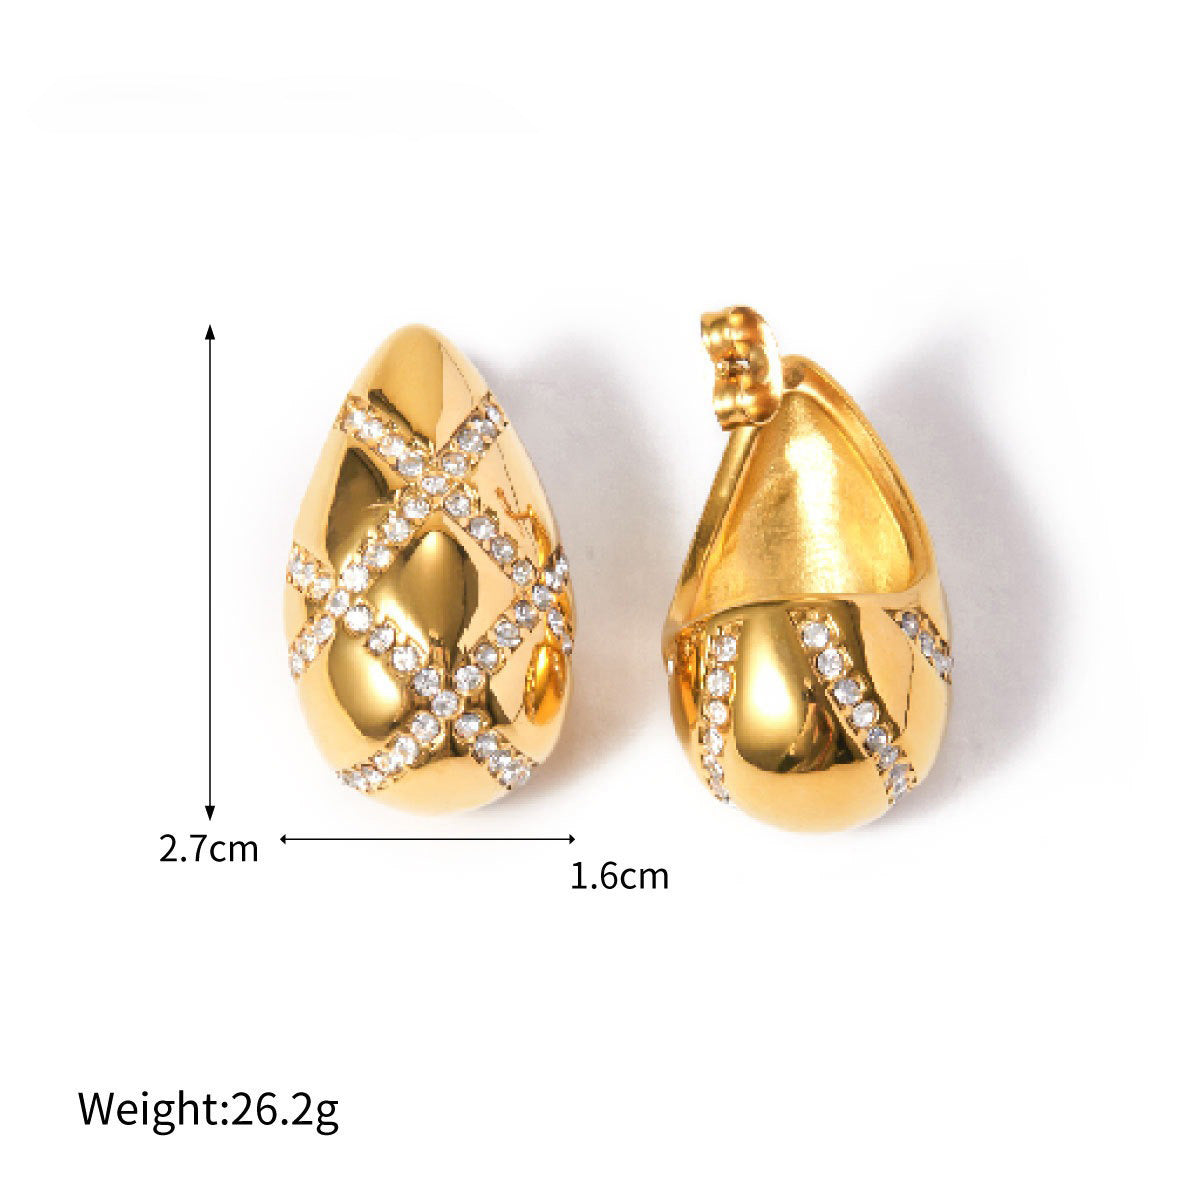 Modische 18-Karat-Ohrringe in Tropfenform mit diamantbesetztem Rautendesign